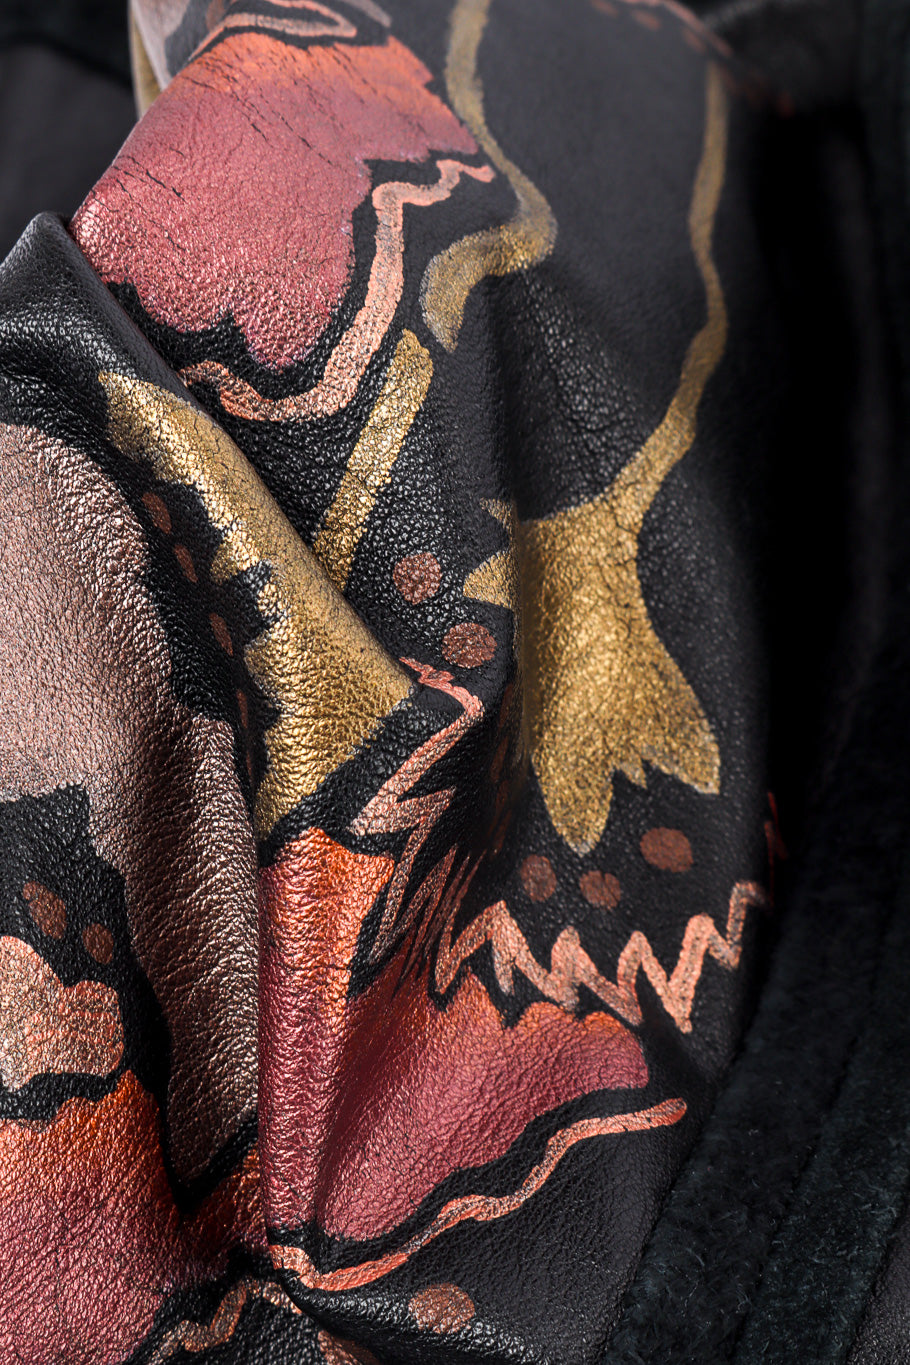 Vintage Painted Leather Vest fabric closeup @recessla